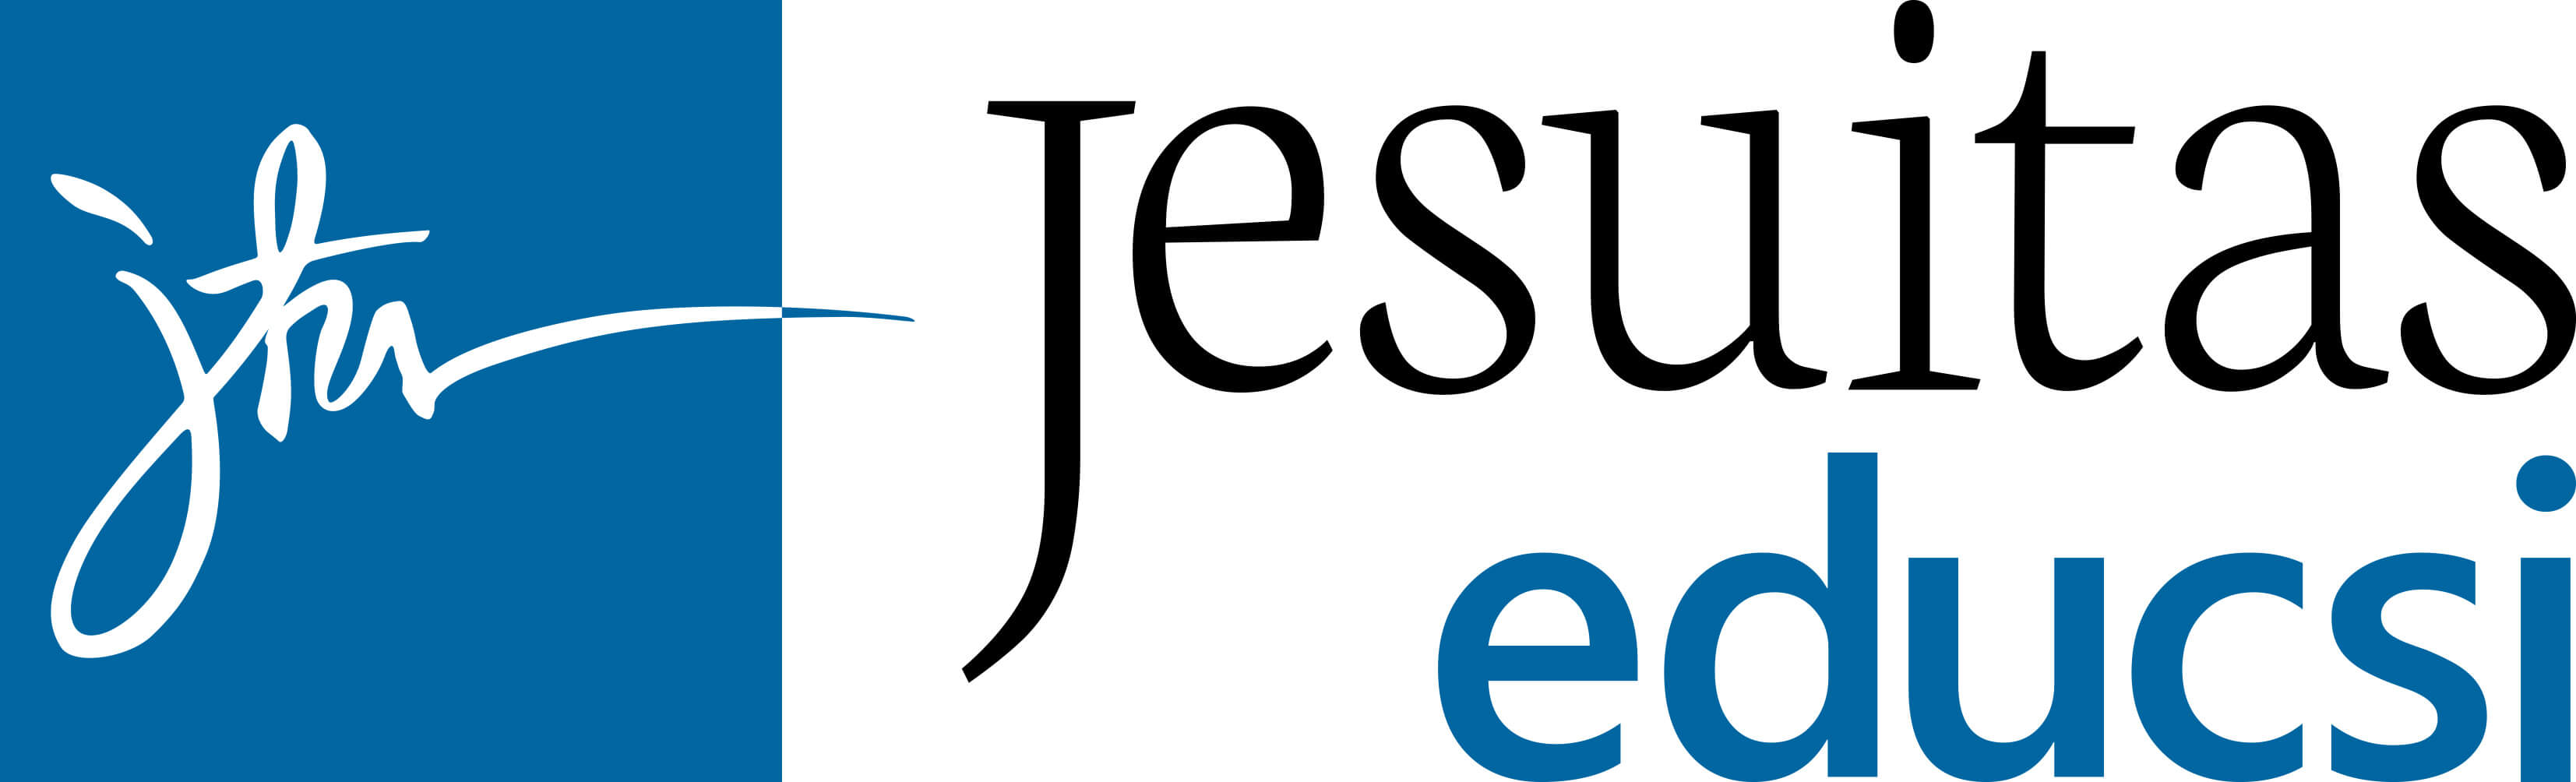 jesuitas logo